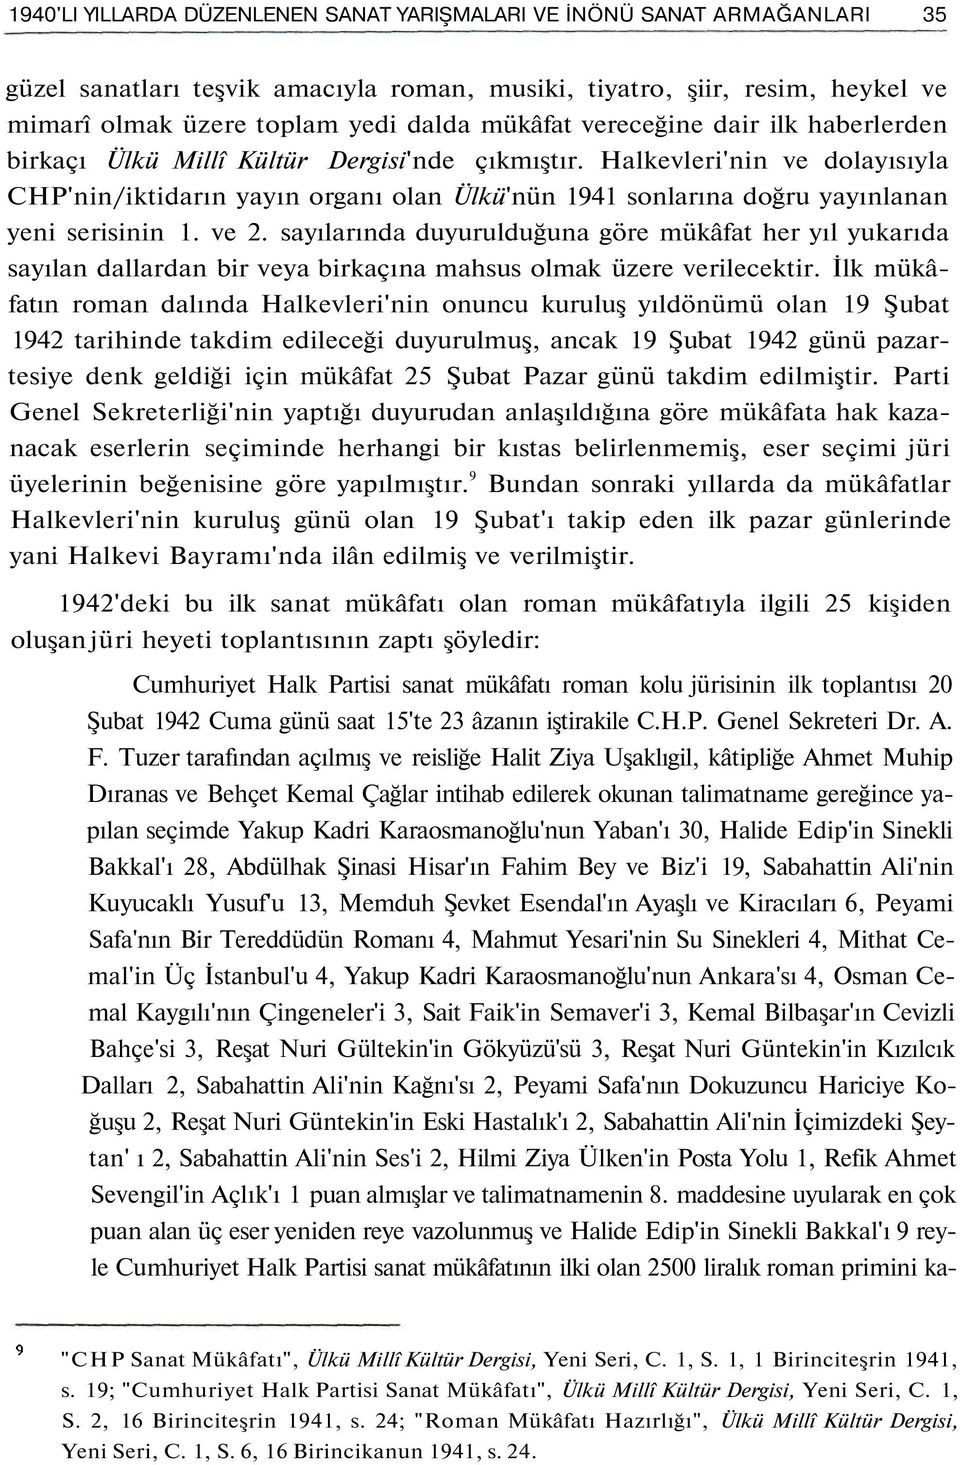 Halkevleri'nin ve dolayısıyla CHP'nin/iktidarın yayın organı olan Ülkü'nün 1941 sonlarına doğru yayınlanan yeni serisinin 1. ve 2.